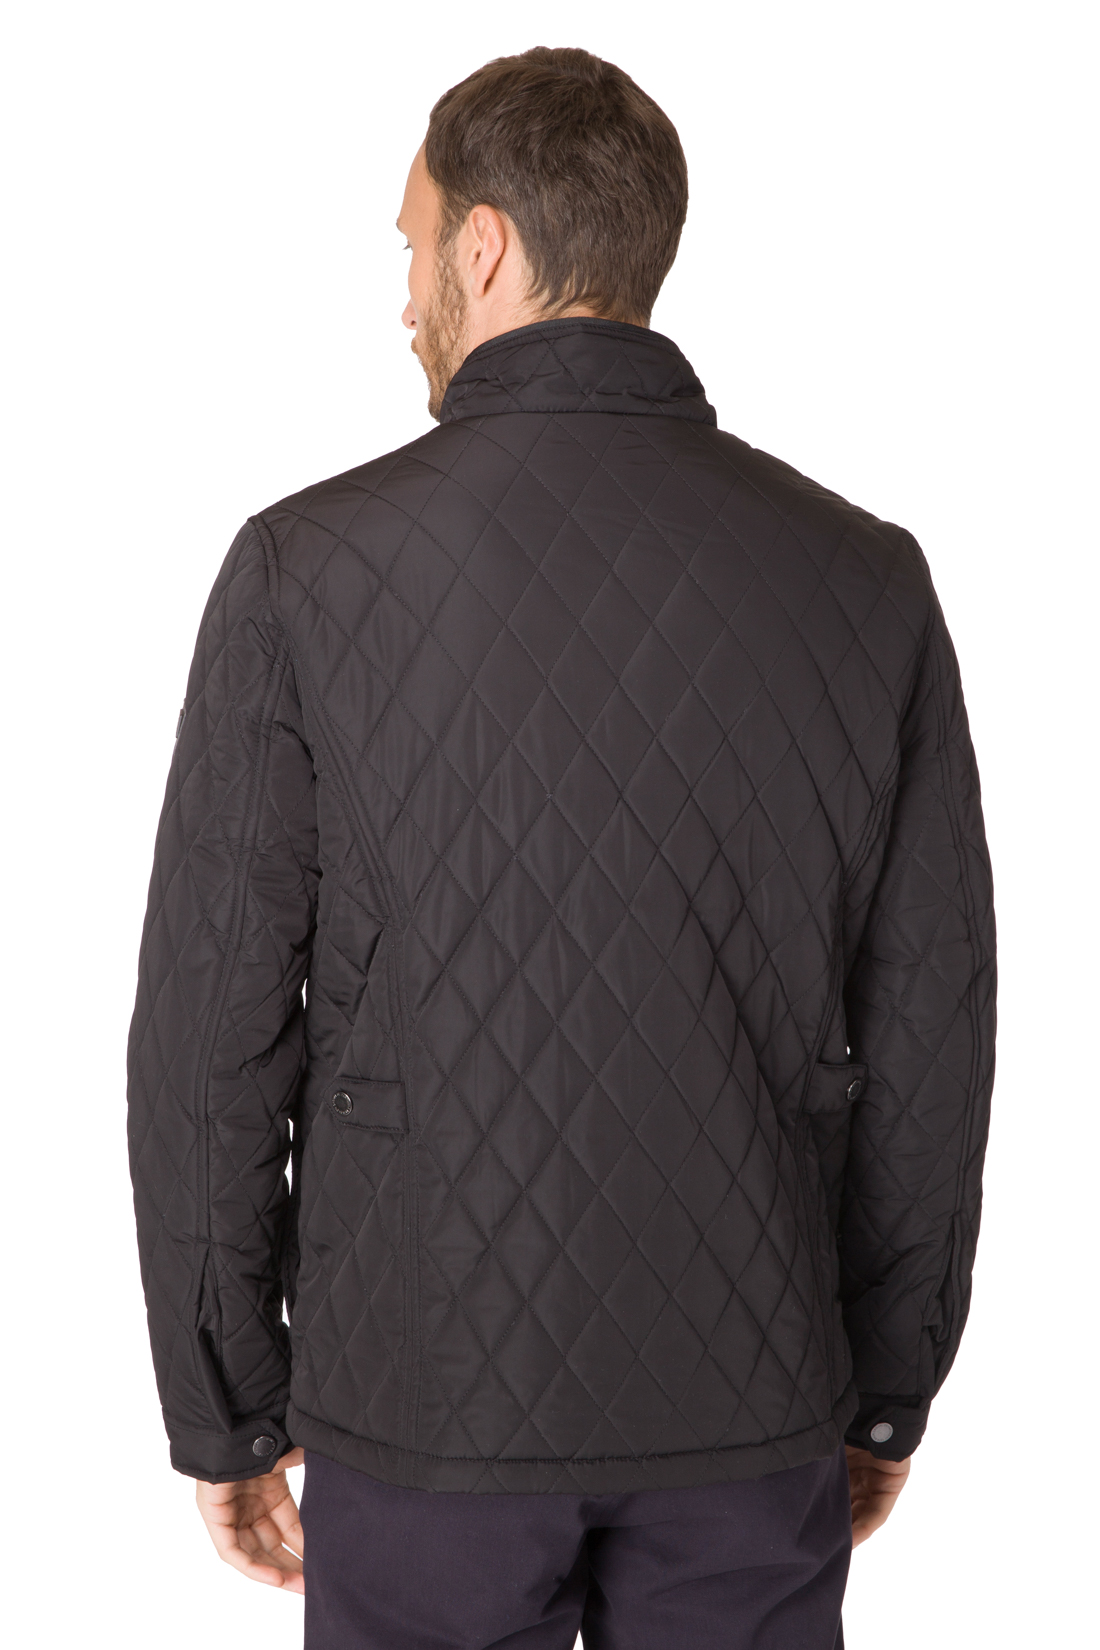 Стёганая куртка с воротником-стойкой (арт. baon B537017), размер M, цвет черный Стёганая куртка с воротником-стойкой (арт. baon B537017) - фото 2